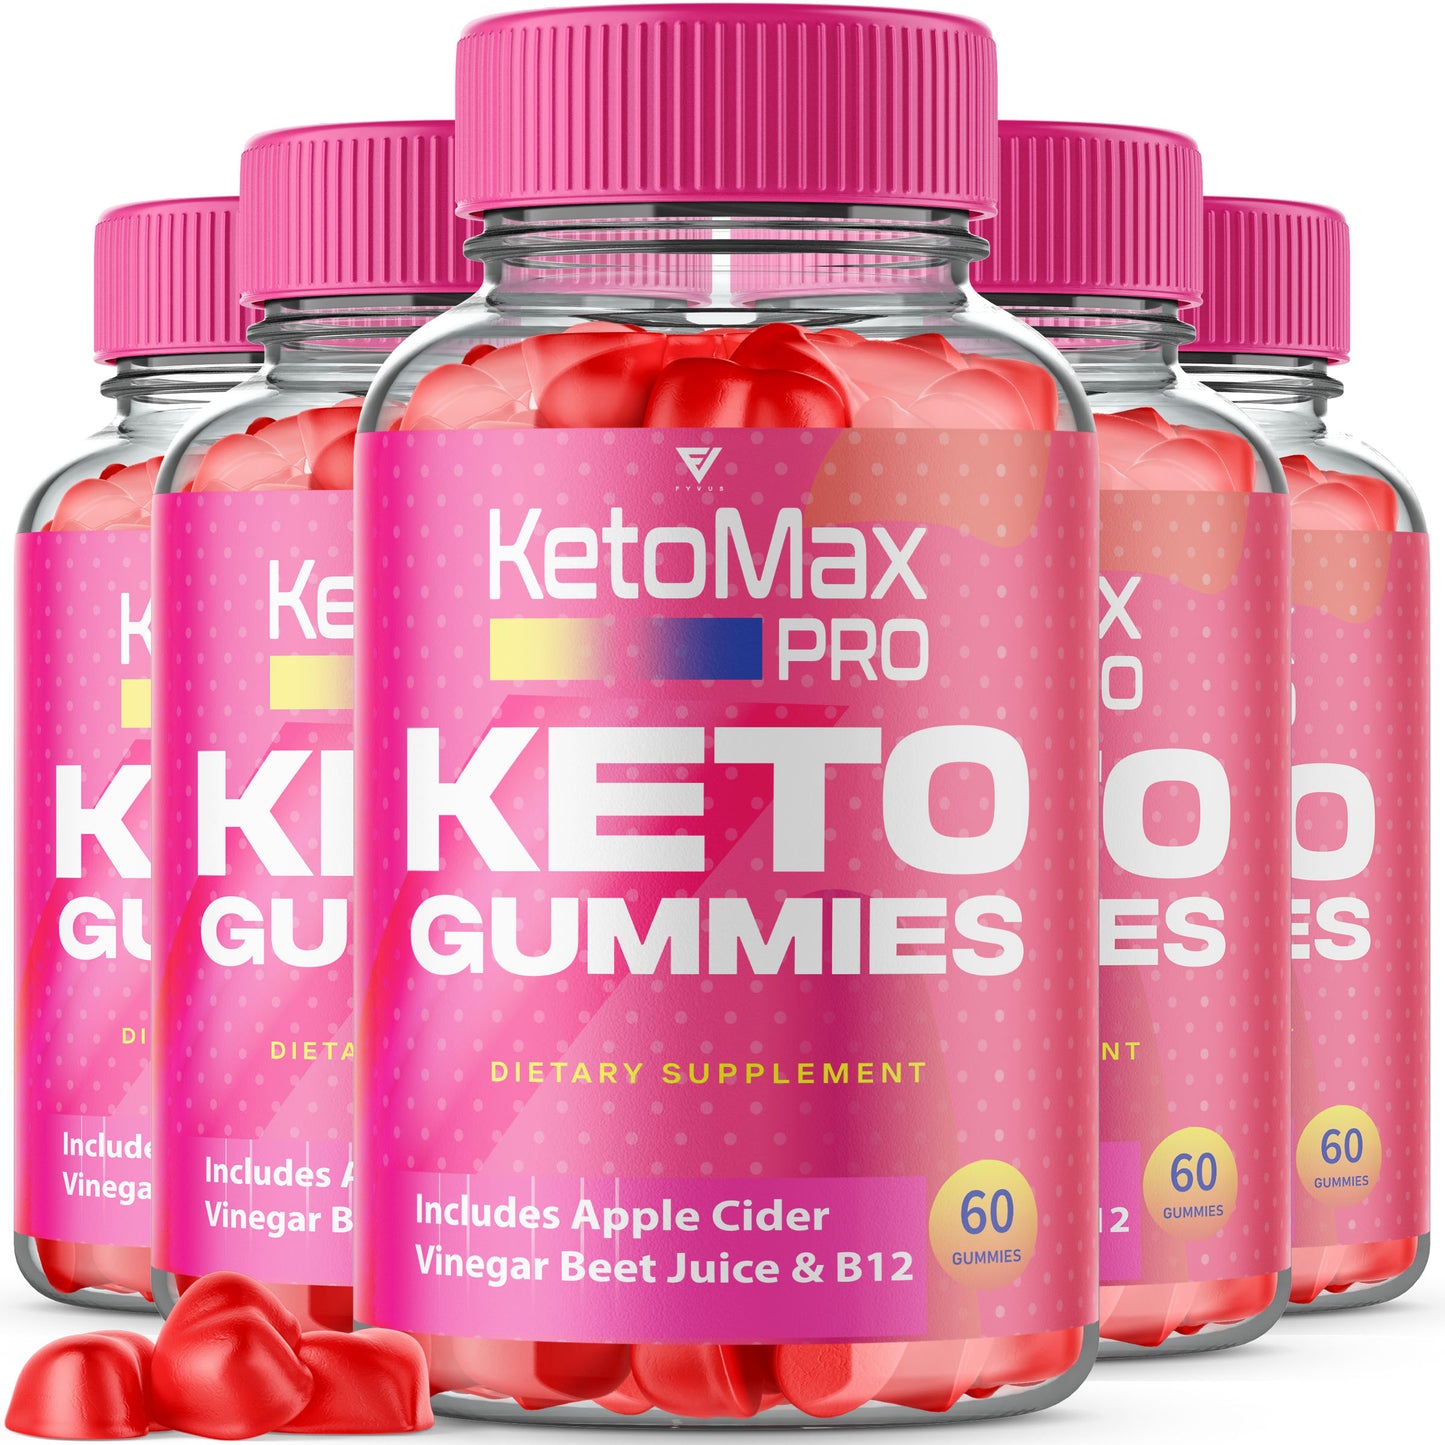 KetoMax Pro Keto Gummies